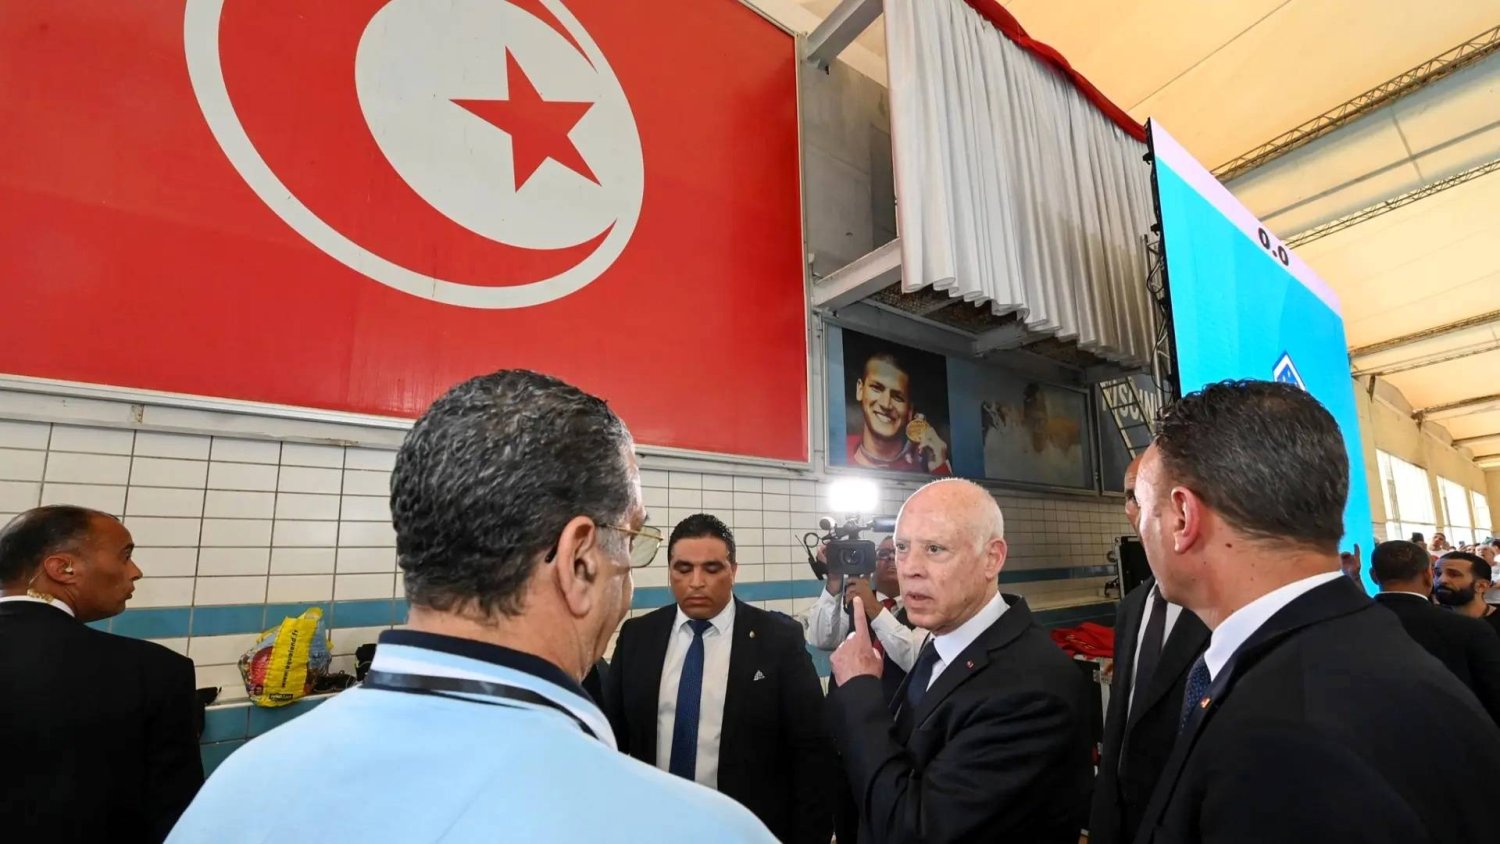 قيس سعيد رئيس تونس خلال زيارته للمسبح الأولمبي برادس (الشرق الأوسط)